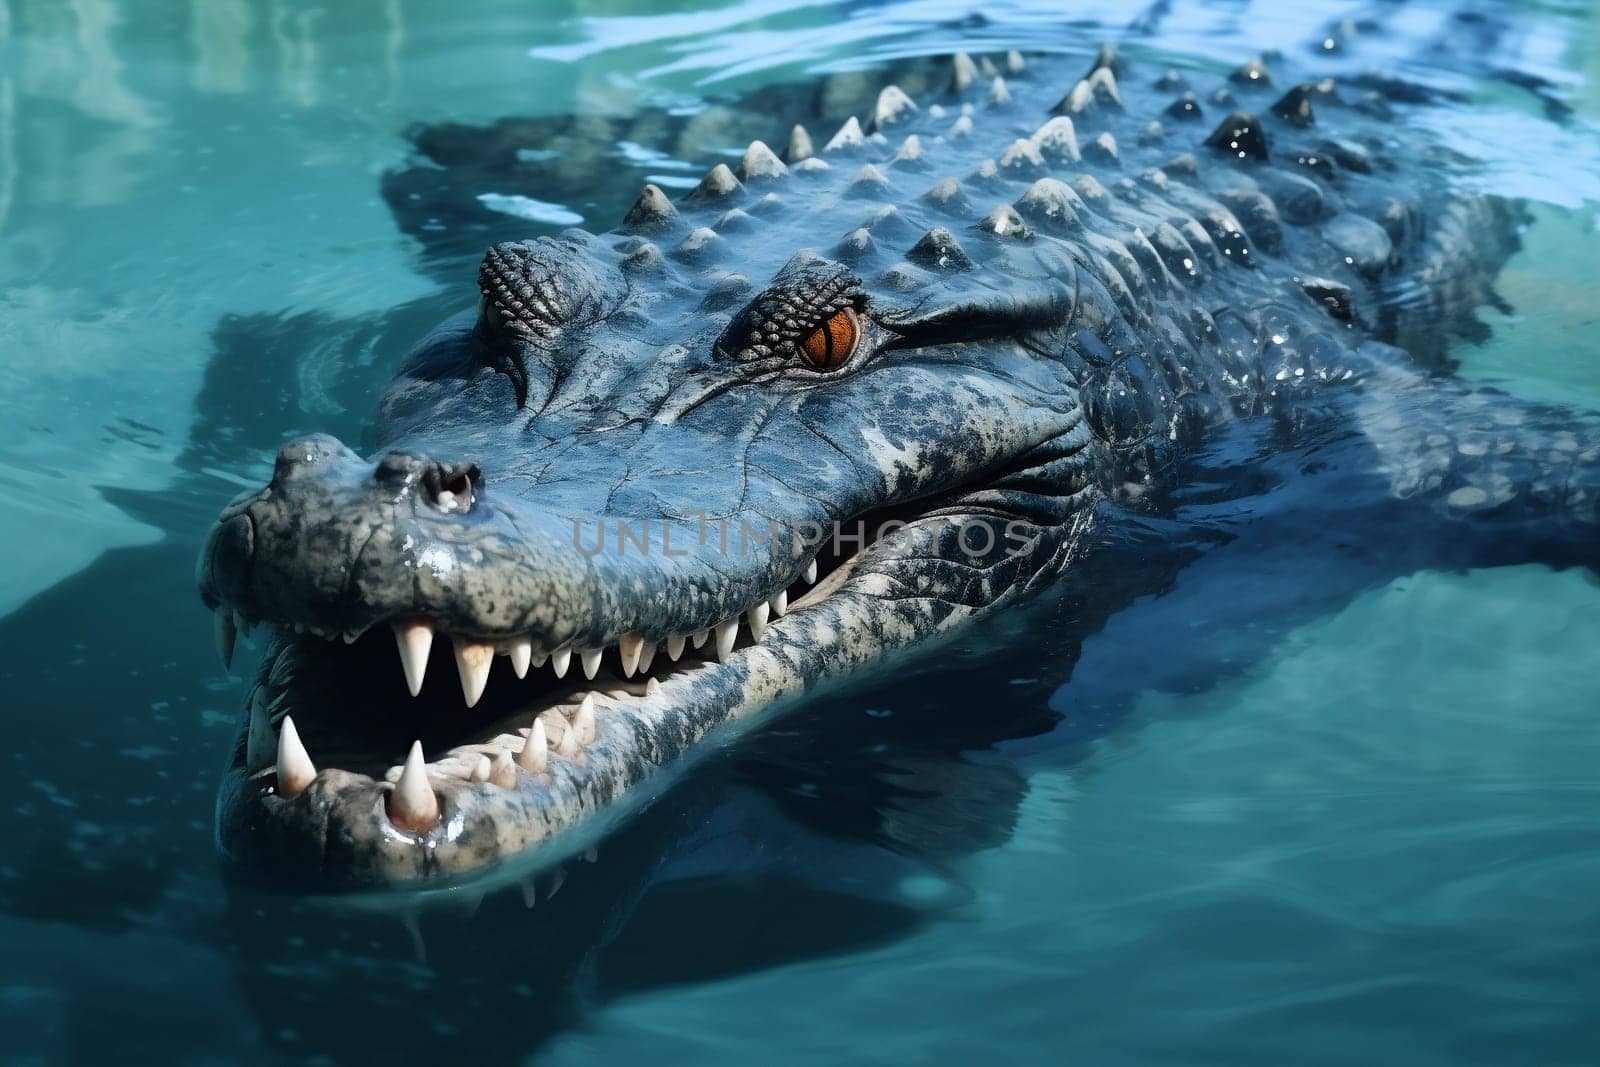 Crocodile predator reptile wildlife alligator animal by Vichizh